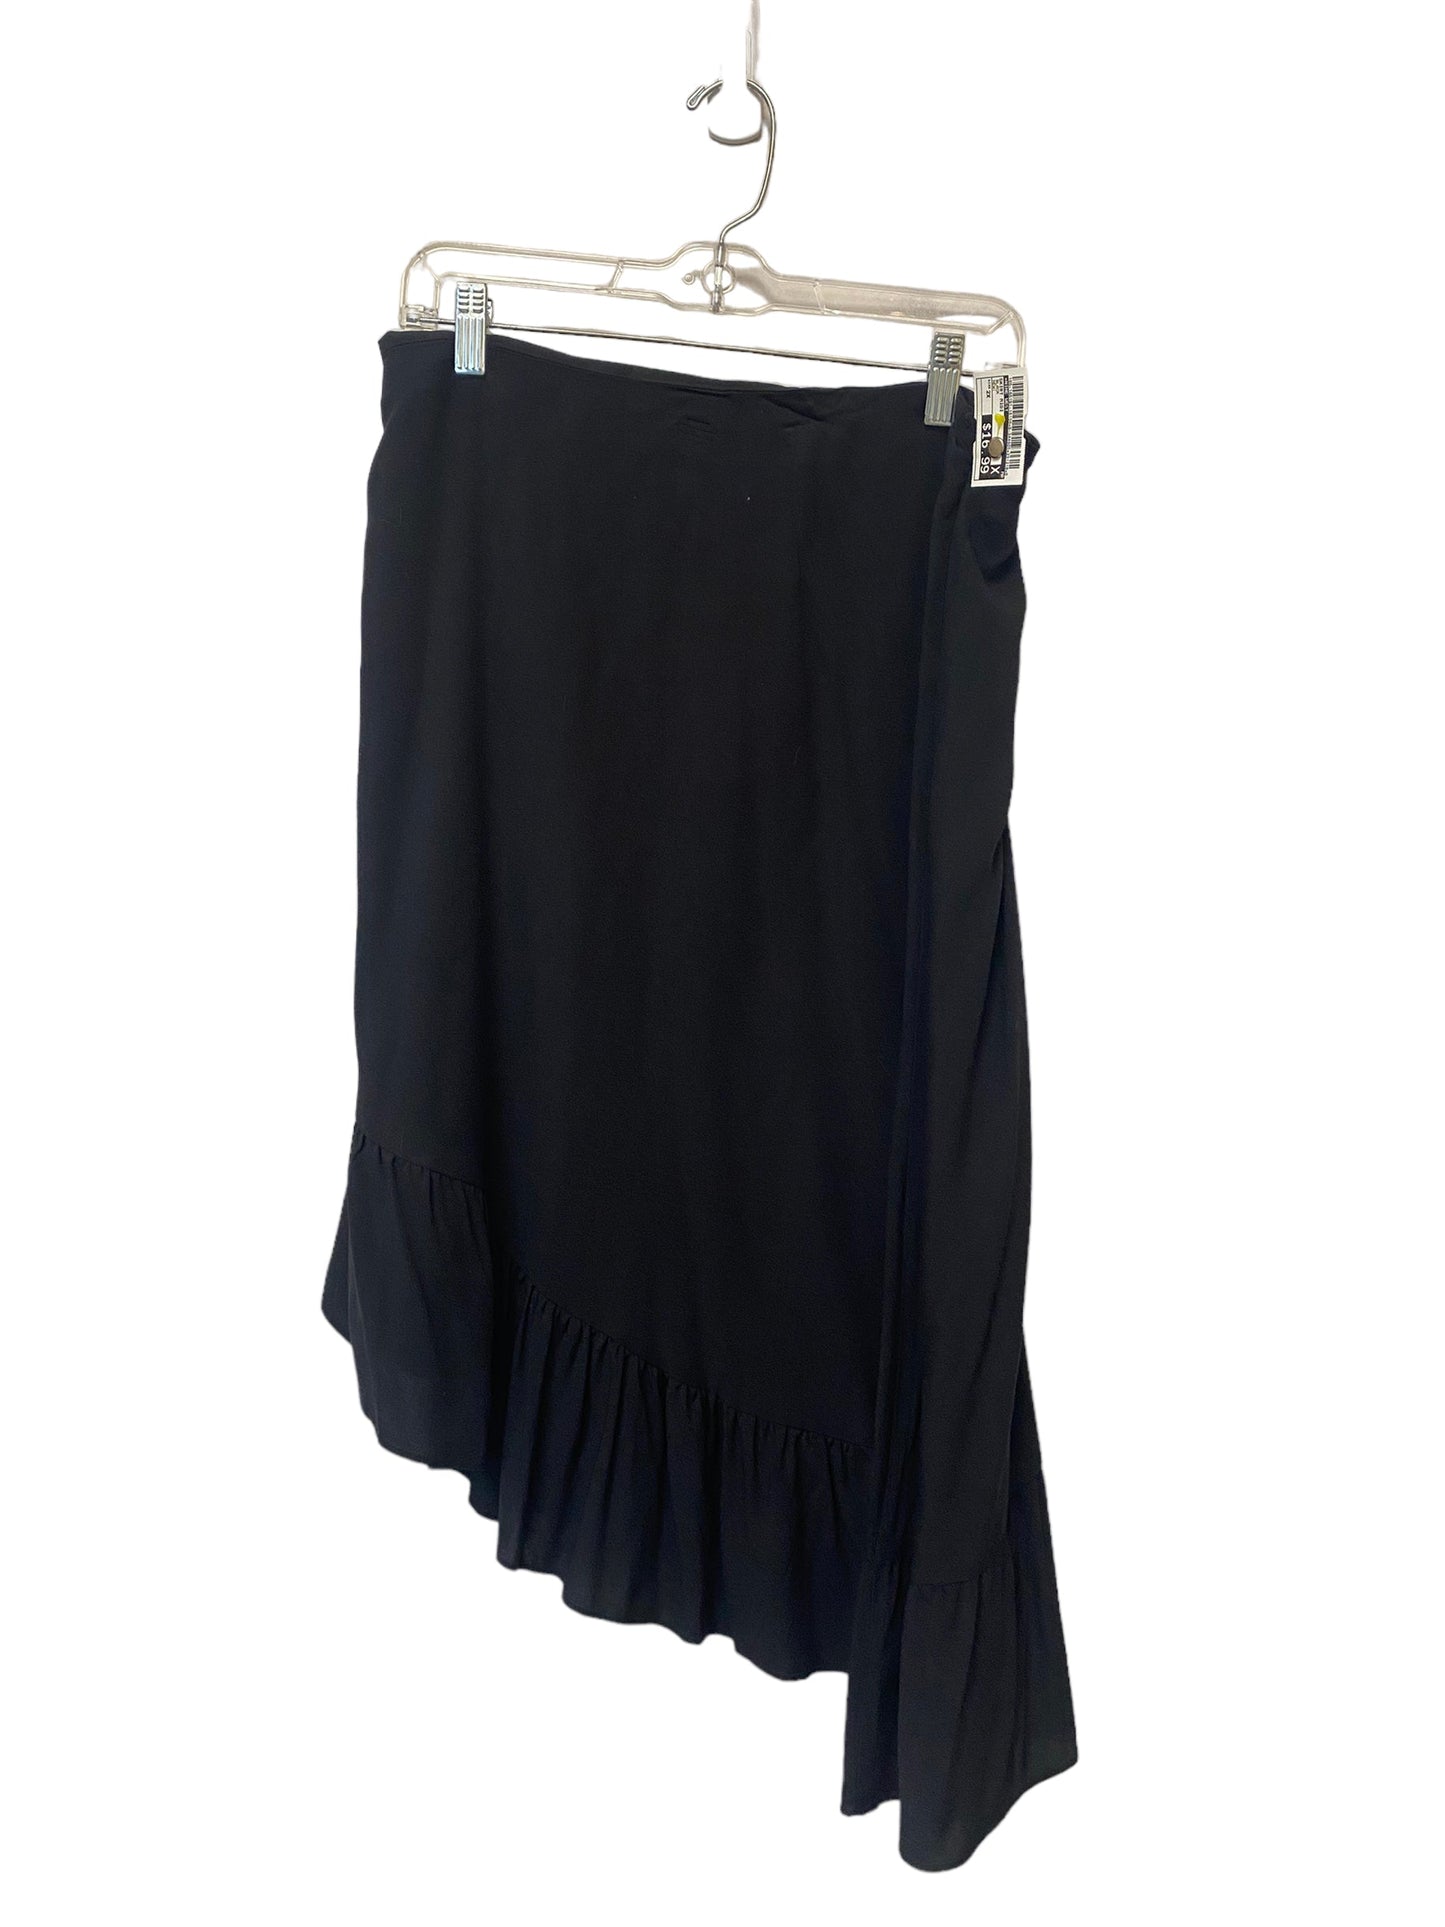 Skirt Midi By Nine West  Size: 2x